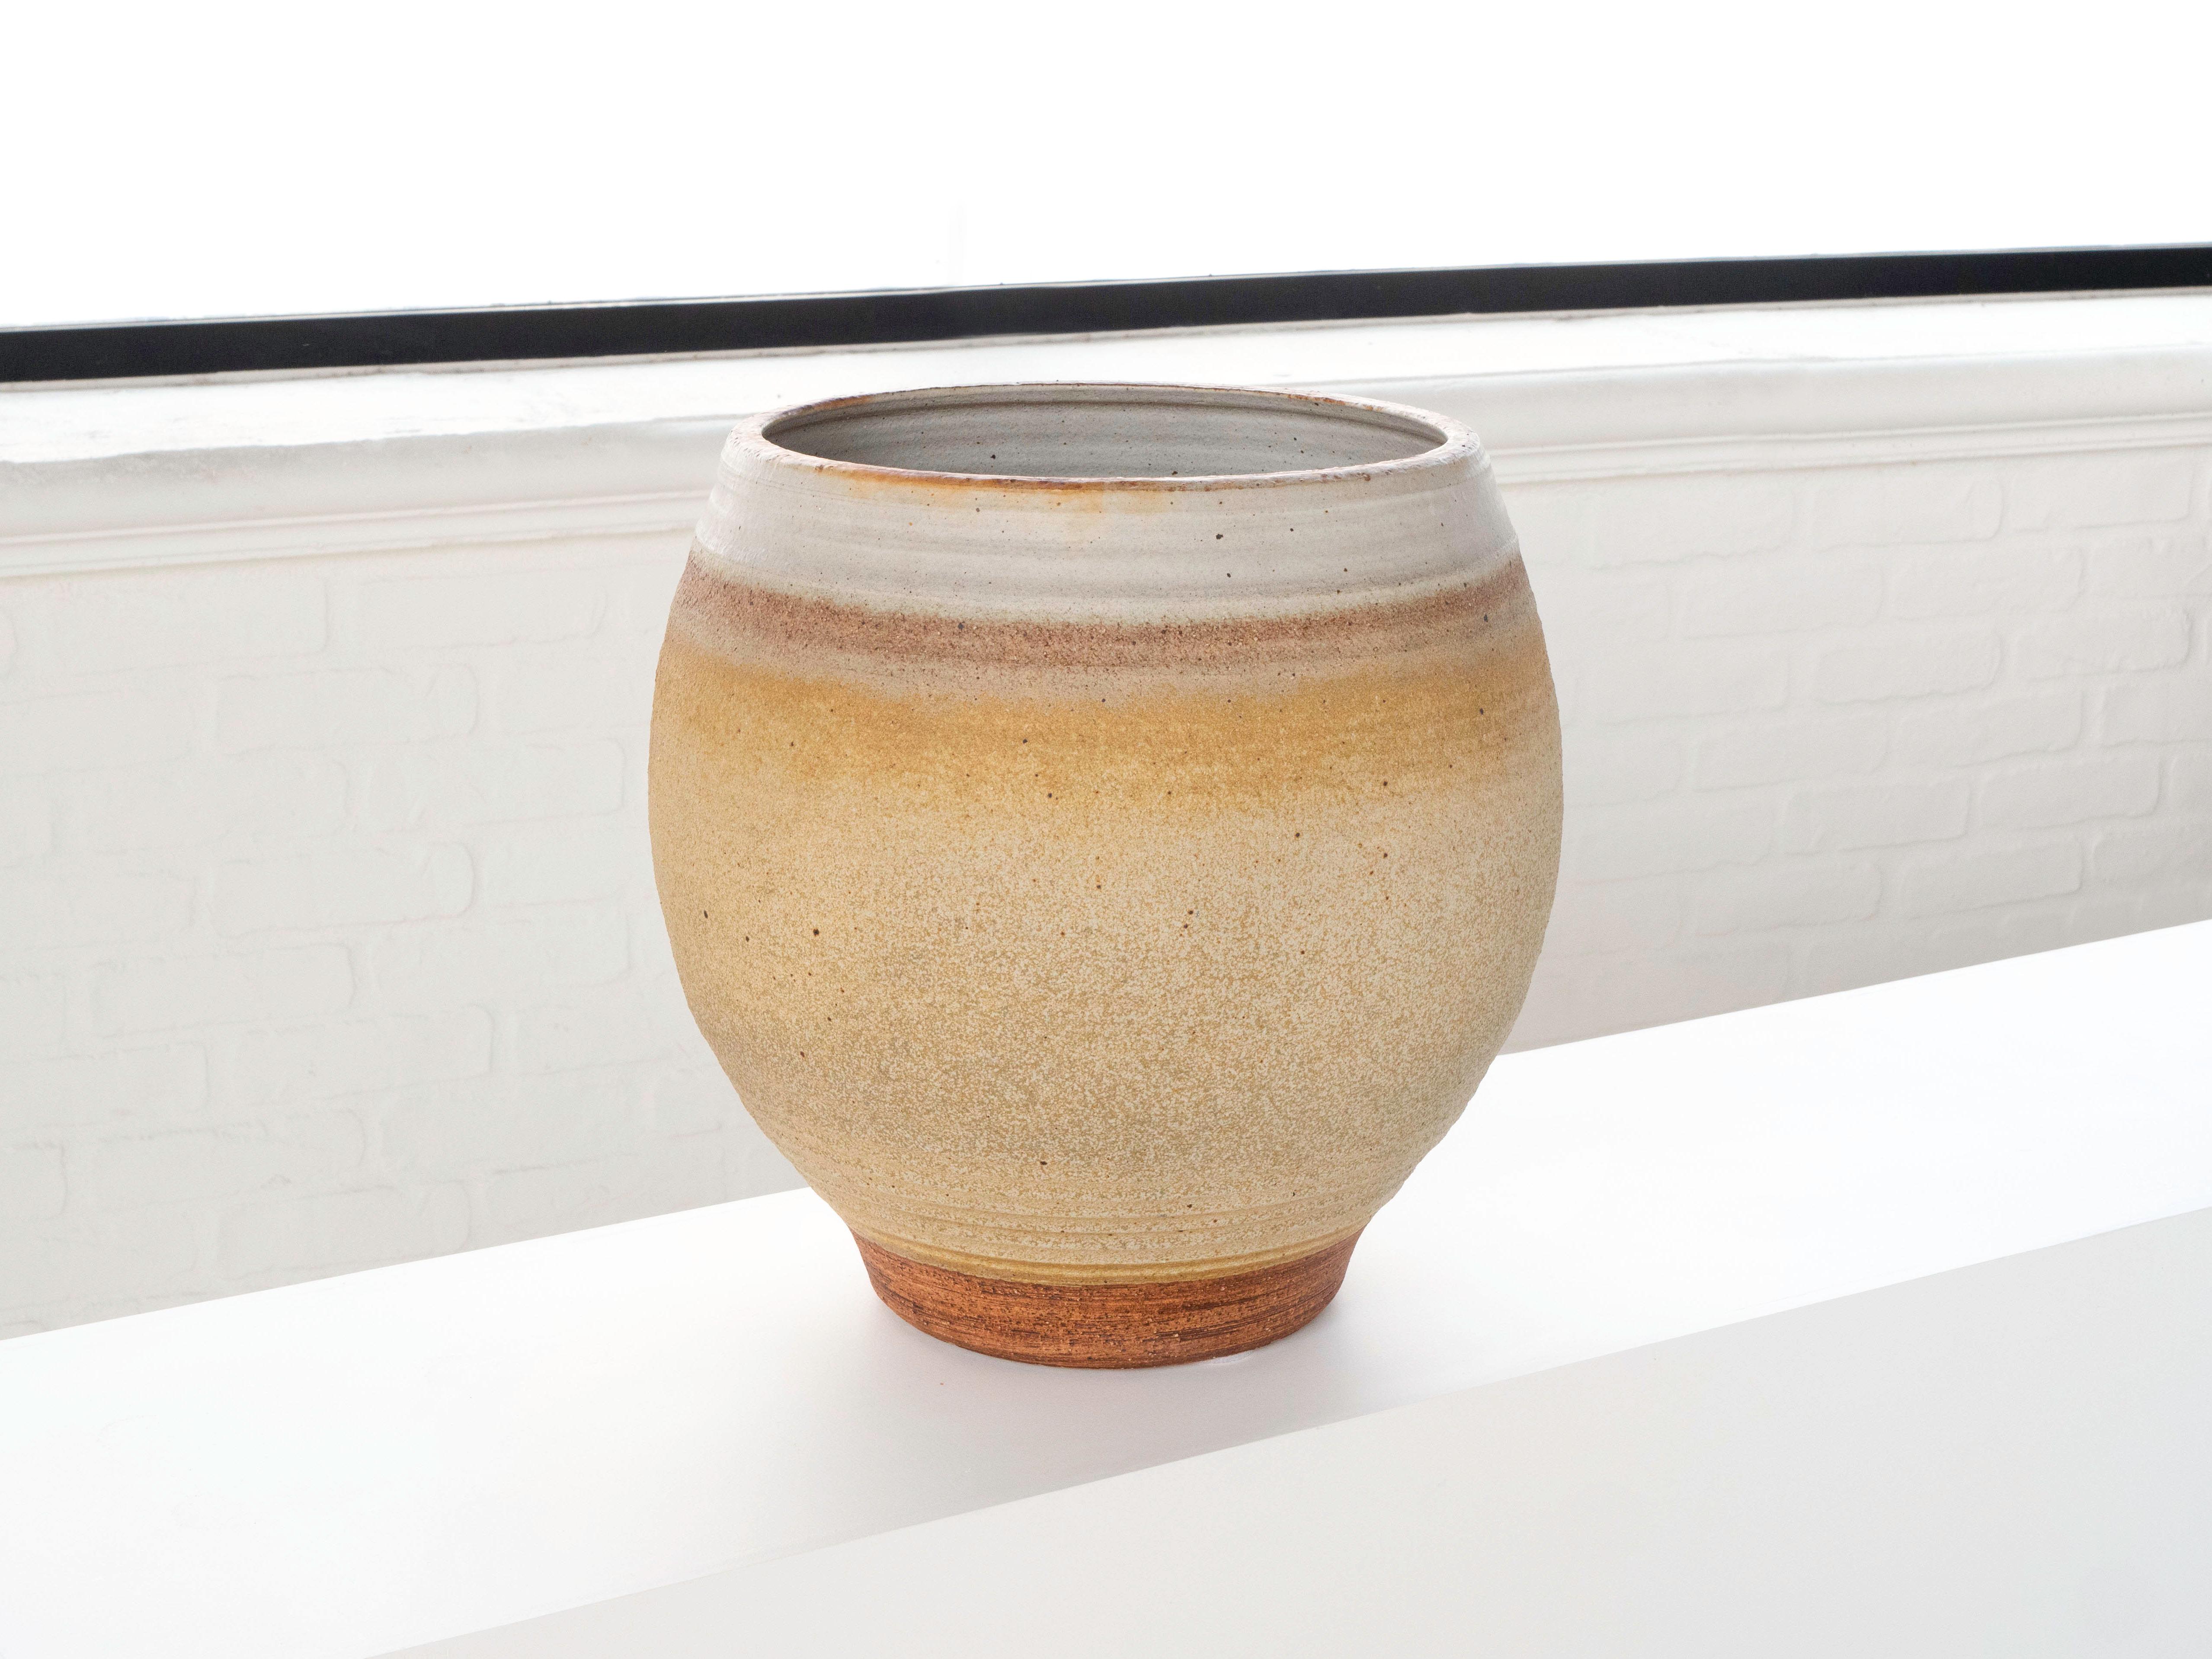 Ein großes handgedrehtes Pflanzgefäß des Keramikers Bob Kinzie für seine Firma Affiliated Craftsmen, Kalifornien, 1960er Jahre. Der obere Teil des Stücks hat eine zartgelbe, bräunliche Glasur mit espressofarbenen Flecken, während der untere Teil